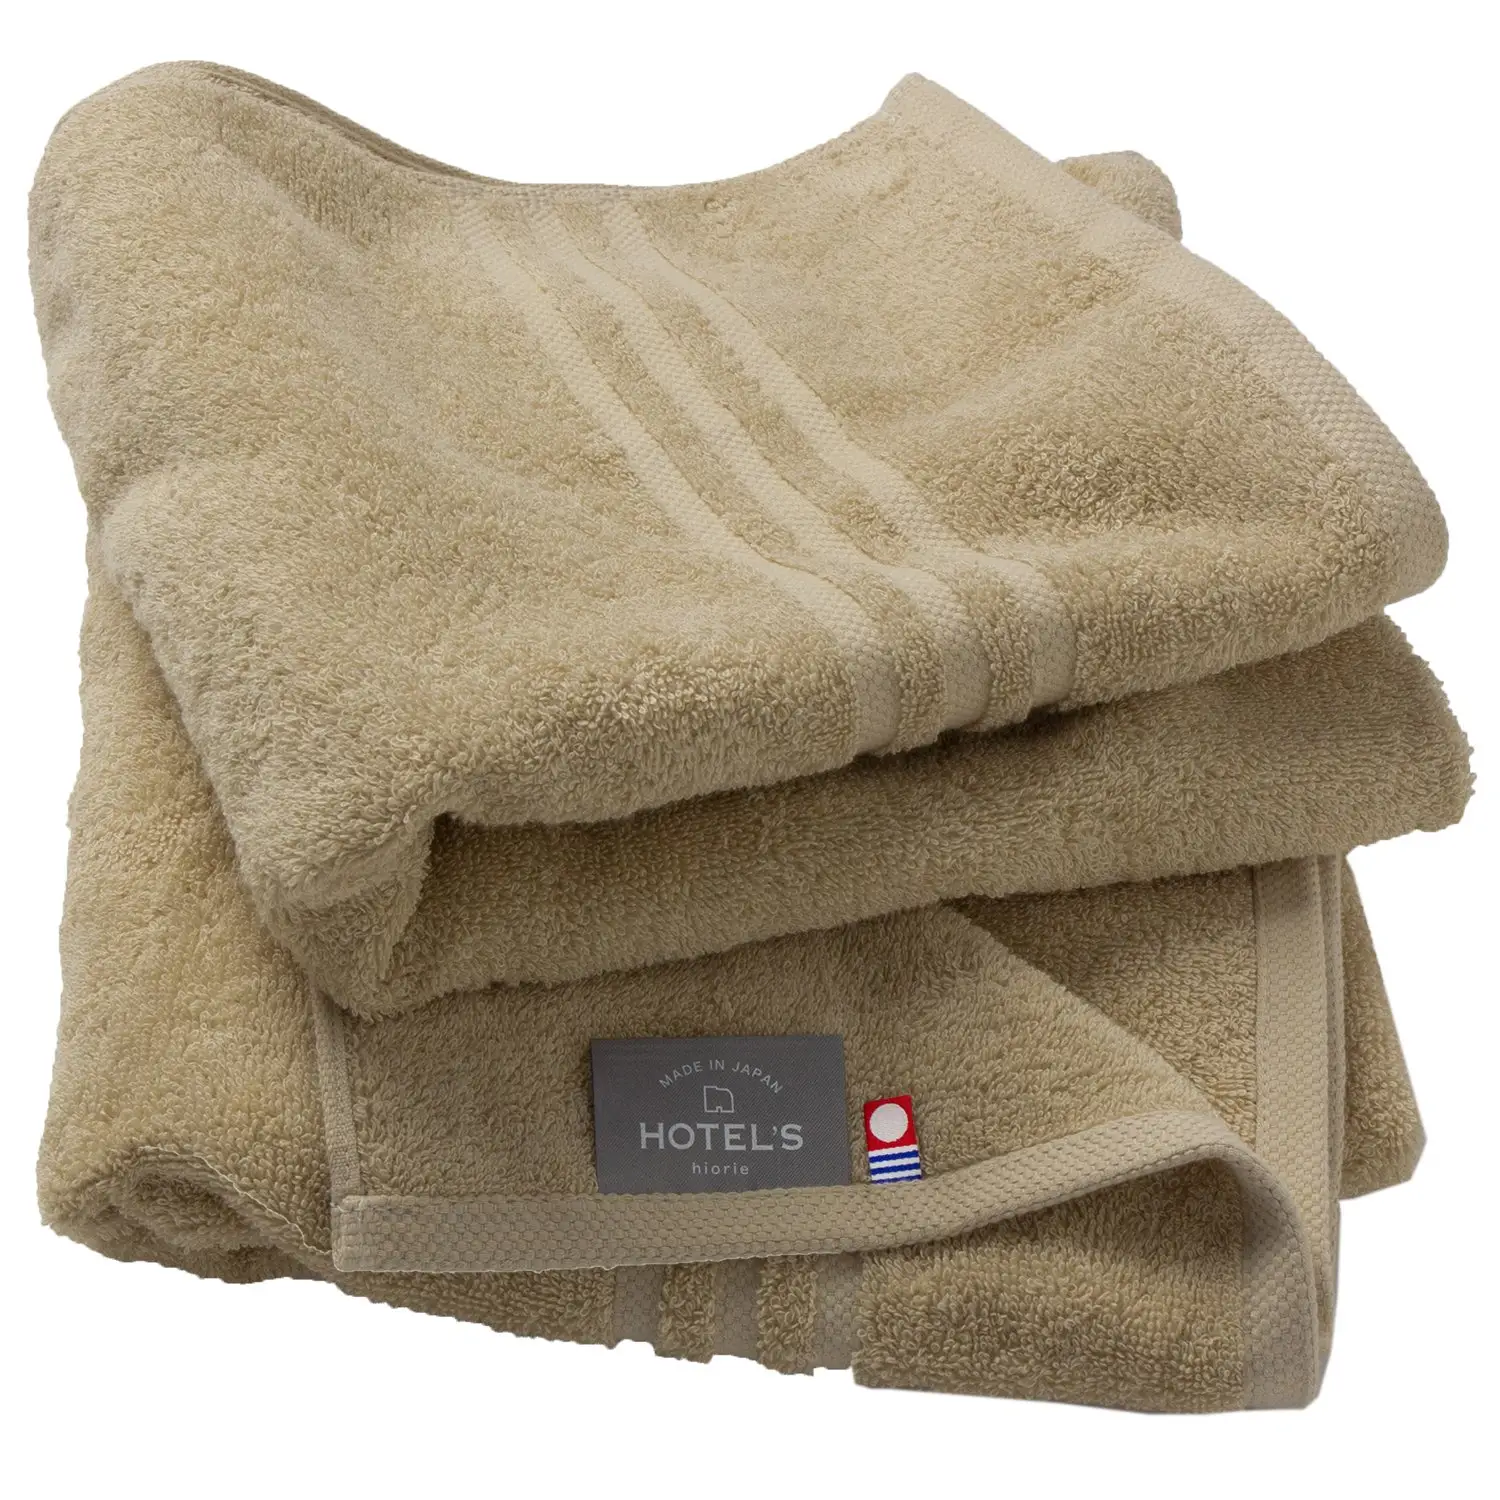 [Prodotti all'ingrosso] HIORIE Imabari asciugamano cotone 100% asciugamano da bagno piccolo HOTEL'S 45*100cm 400GSM morbido basso MOQ Design di lusso Beige